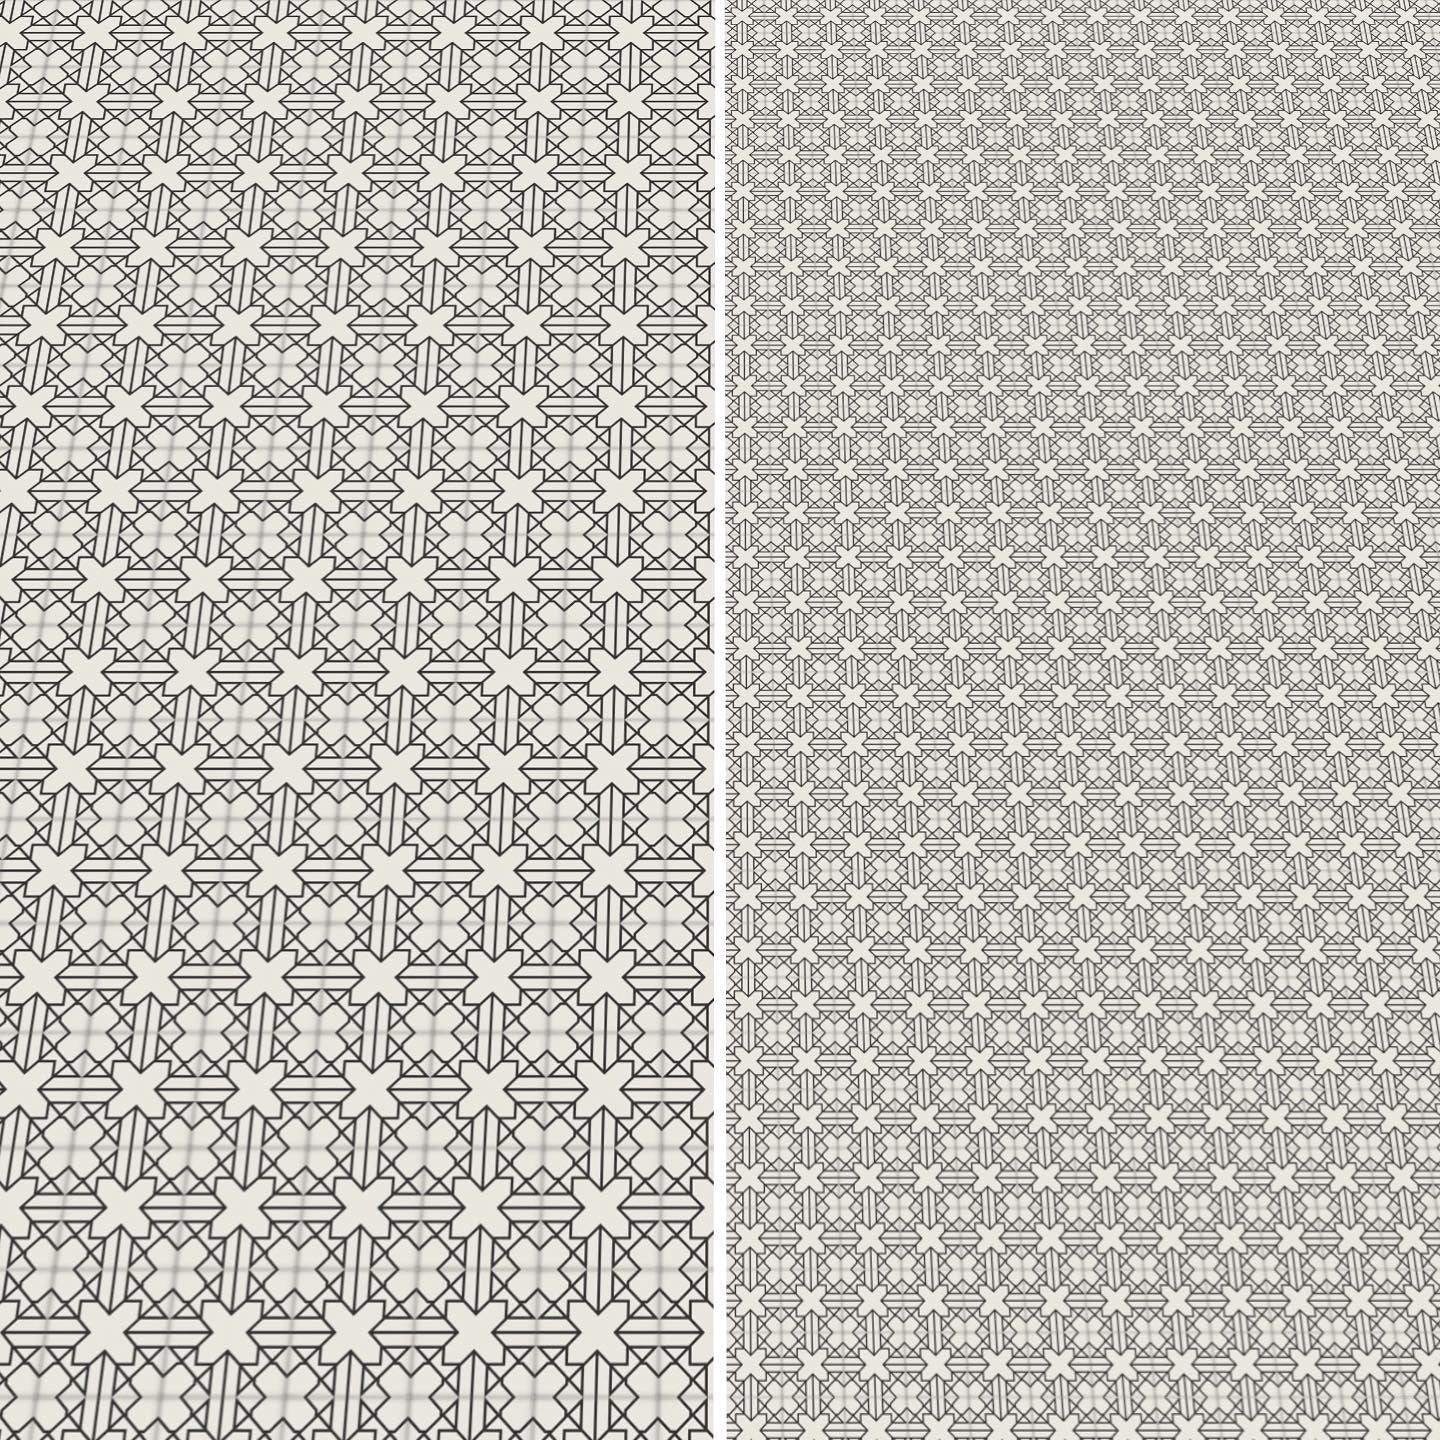 Modern Black and White Paper Tile